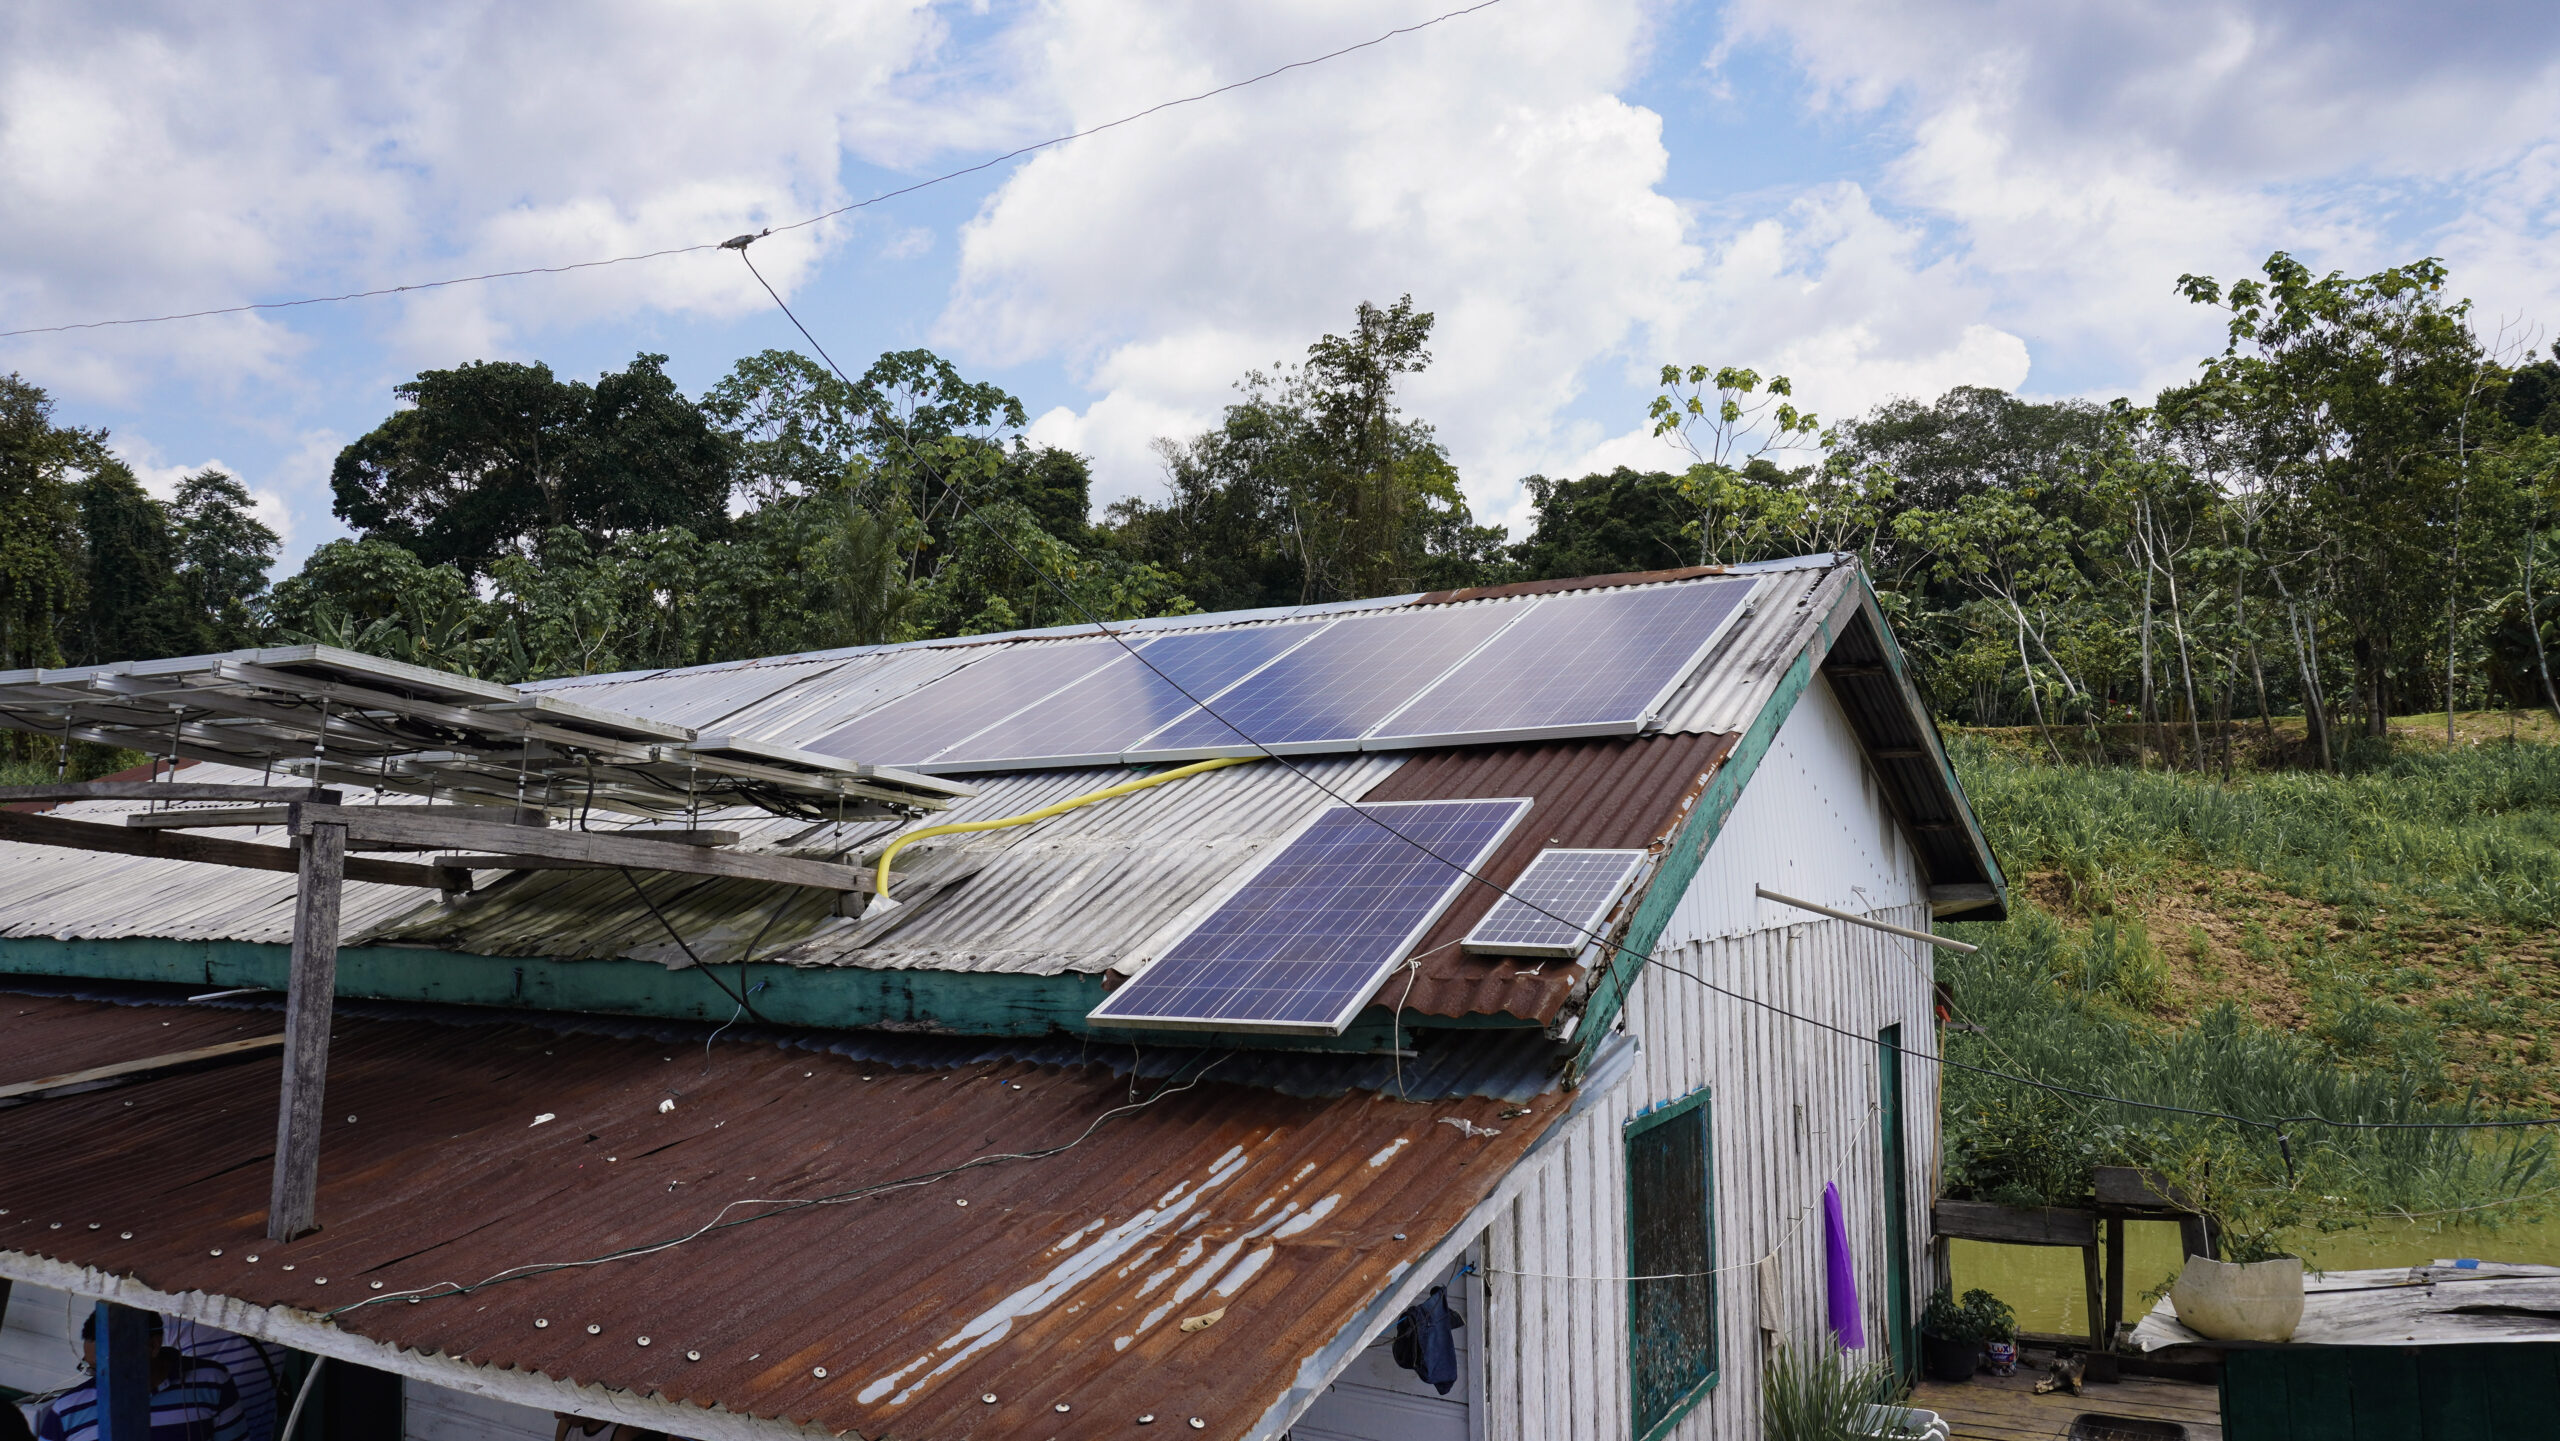 Projetos para a descarbonização da Amazônia vão de biodiesel a solar. Na imagem: Projeto ‘Sempre Luz’, parceria entre a Fundação Amazônia Sustentável (FAS) e a empresa Unicoba da Amazônia, para levar energia solar fotovoltaica a comunidades ribeirinhas e indígenas do Amazonas (Foto: Divulgação FAS) 